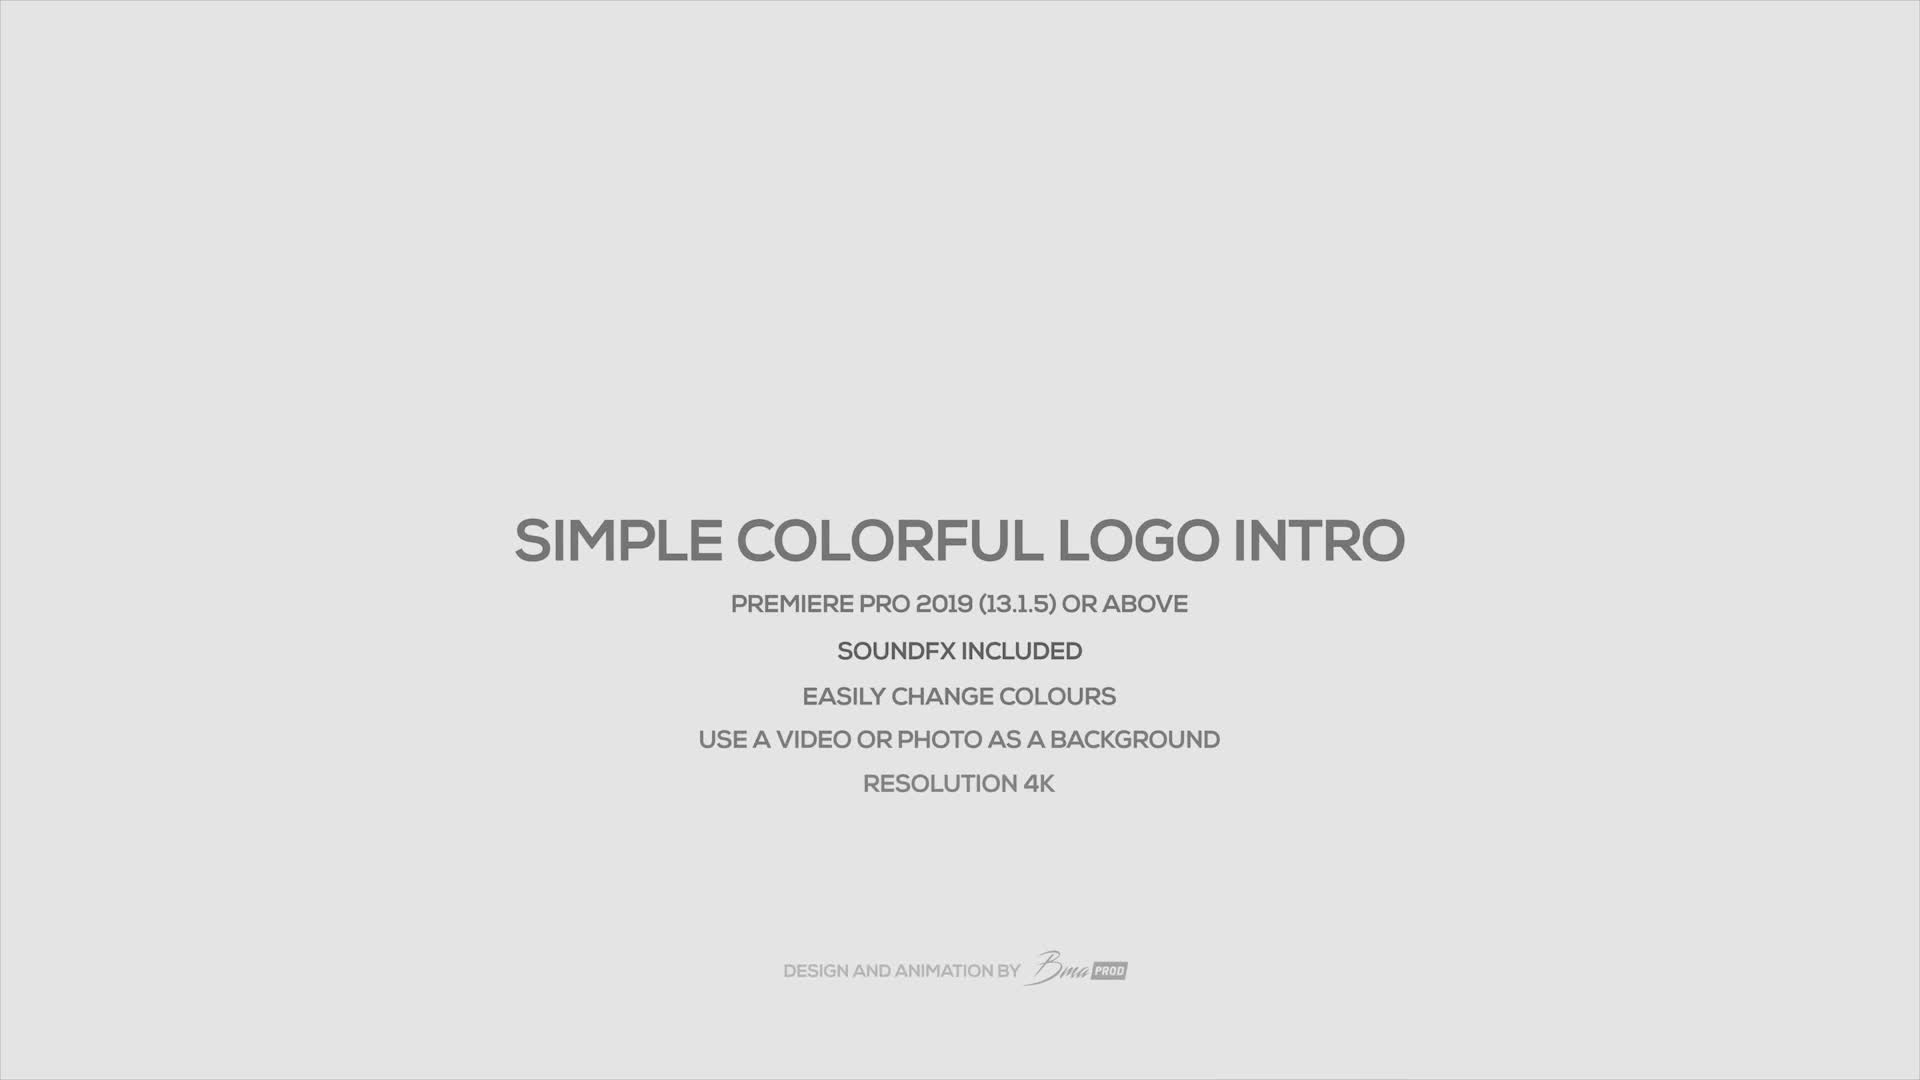 Simple Colorful Logo Intro Videohive 28019163 Premiere Pro Image 1